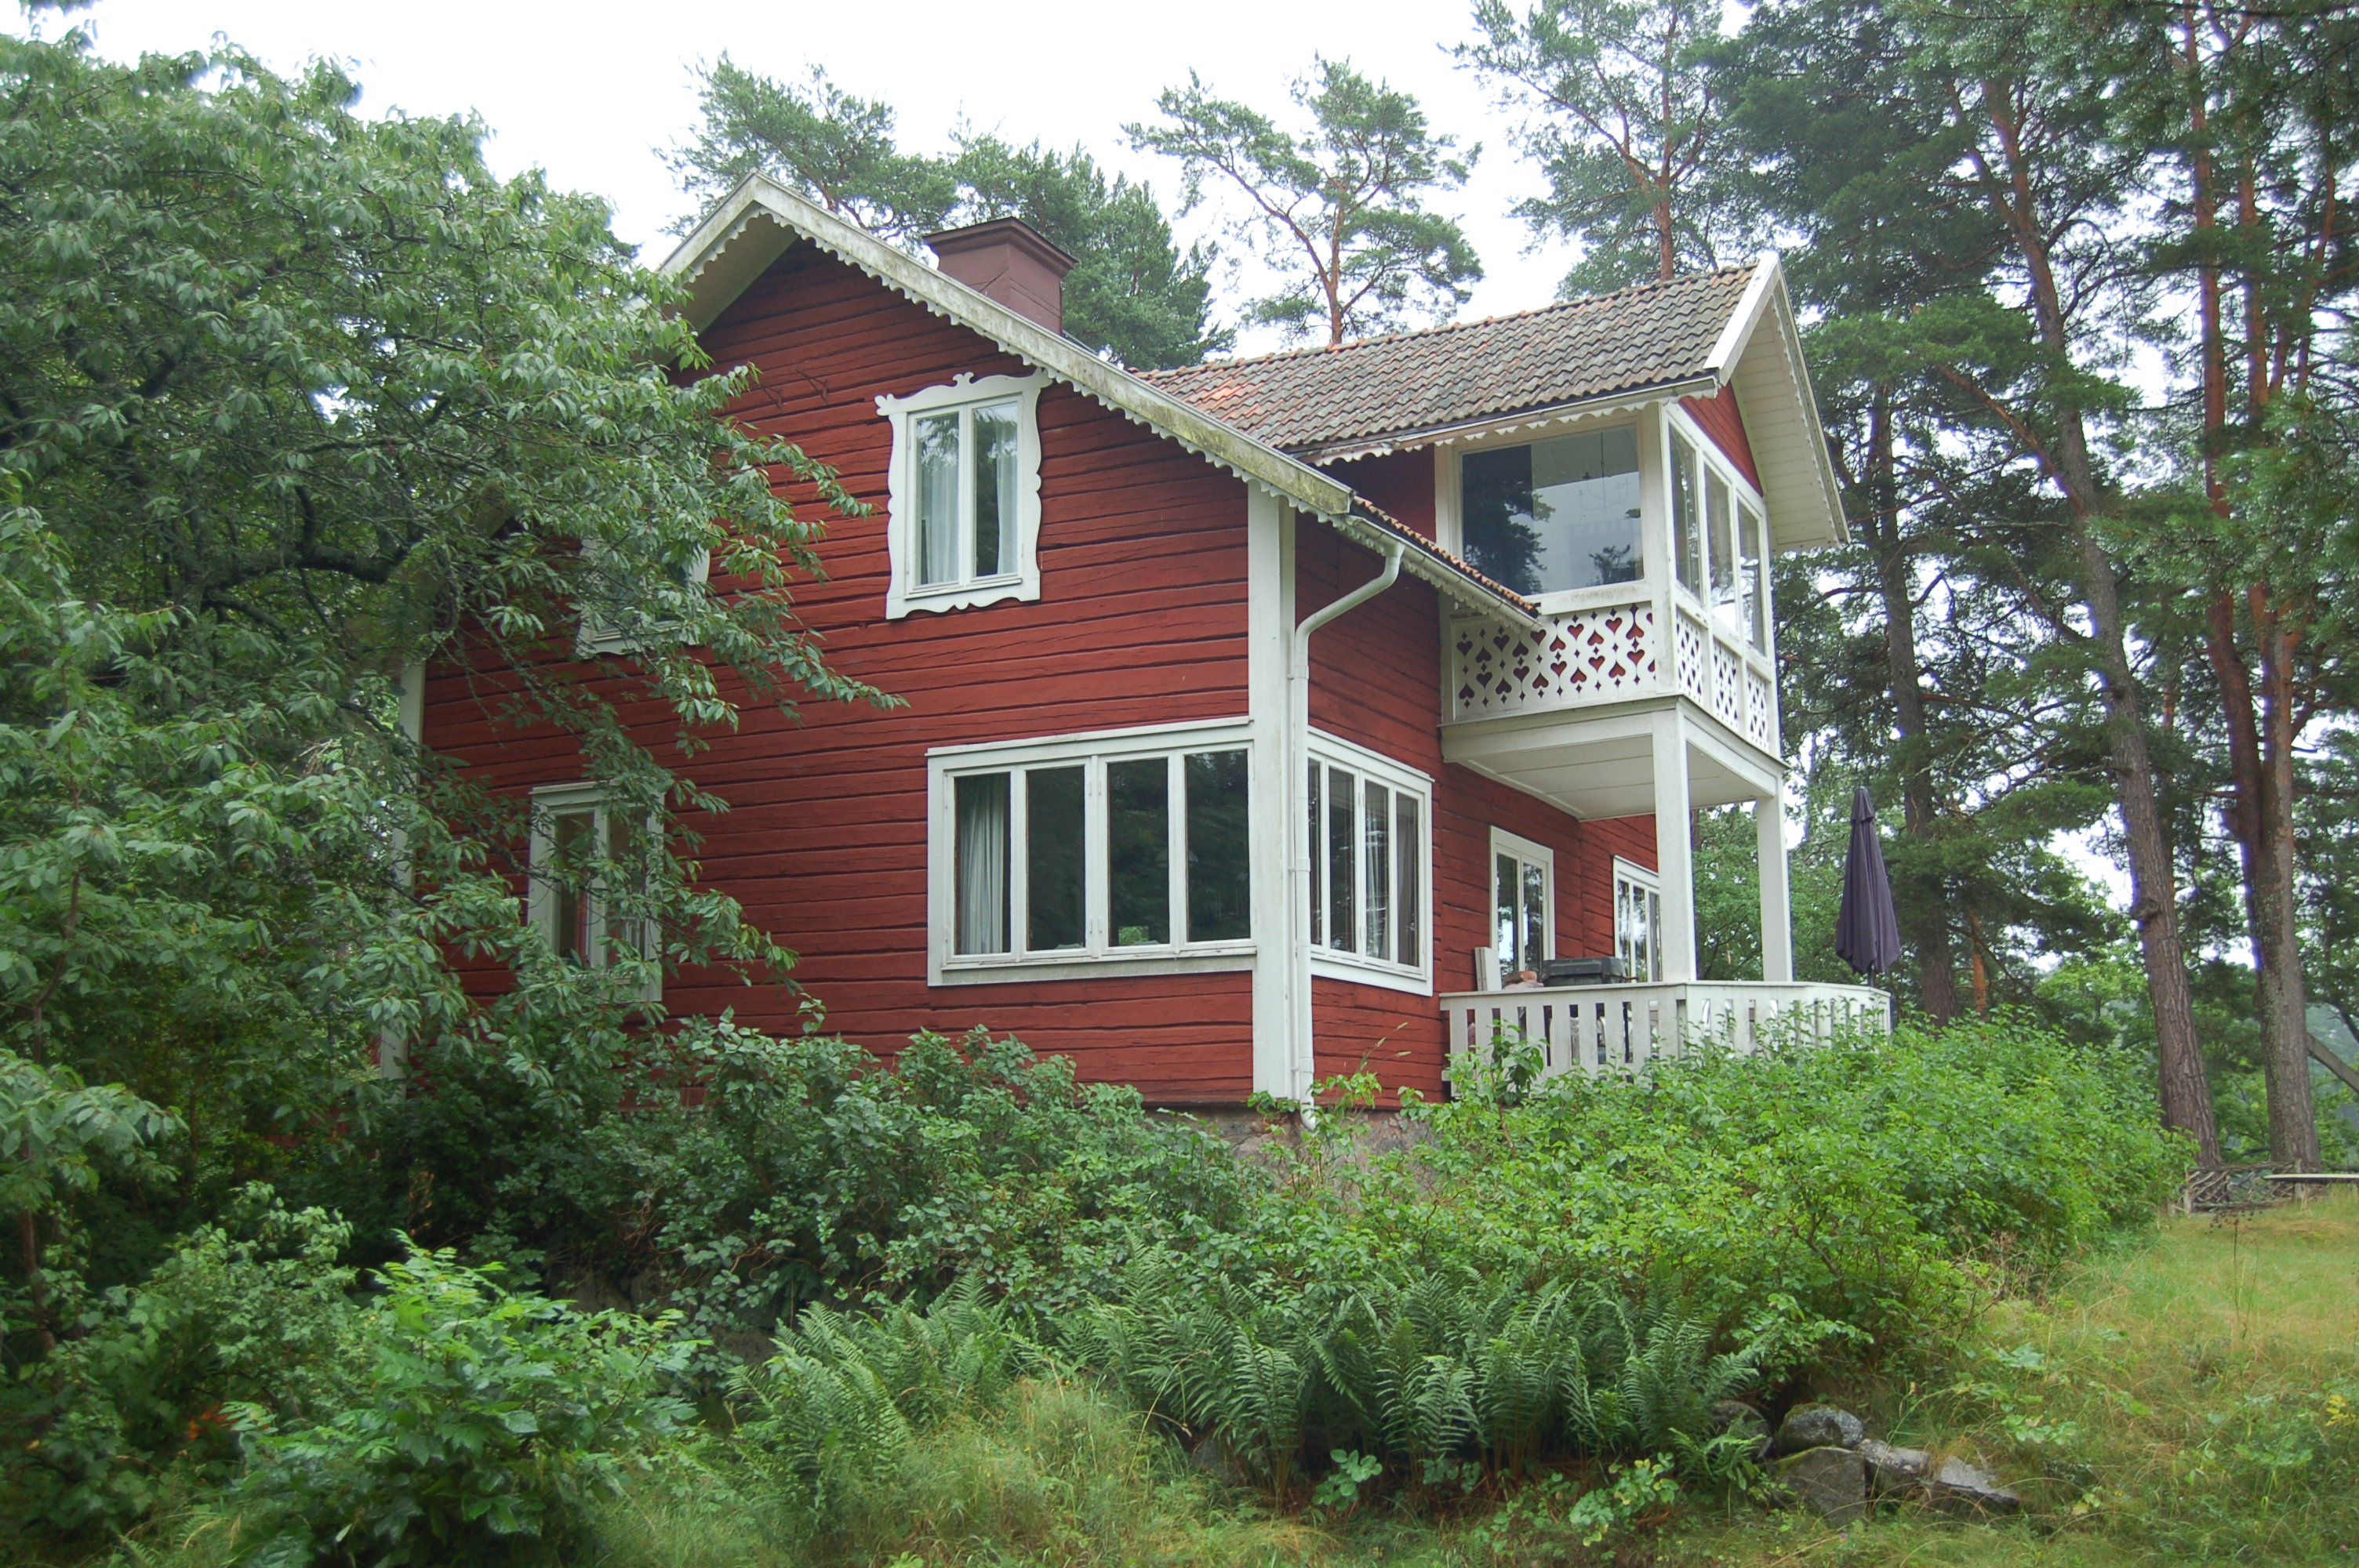 Bostadshus flyttat till sin nuvarande plats från Hälsningland 1920.